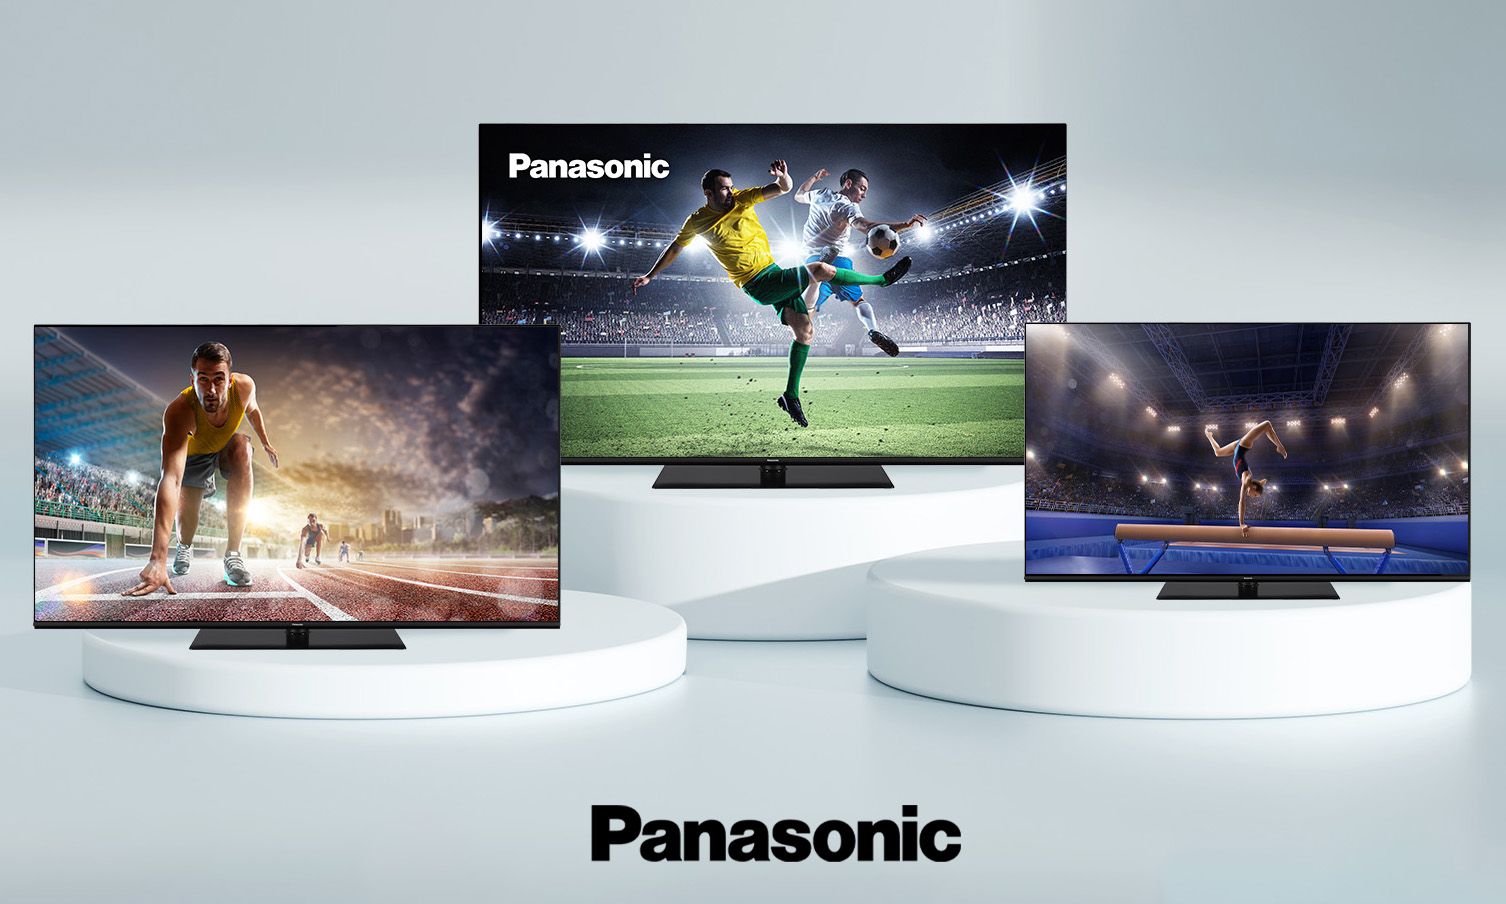 Three Panasonic Tvs on pedestals